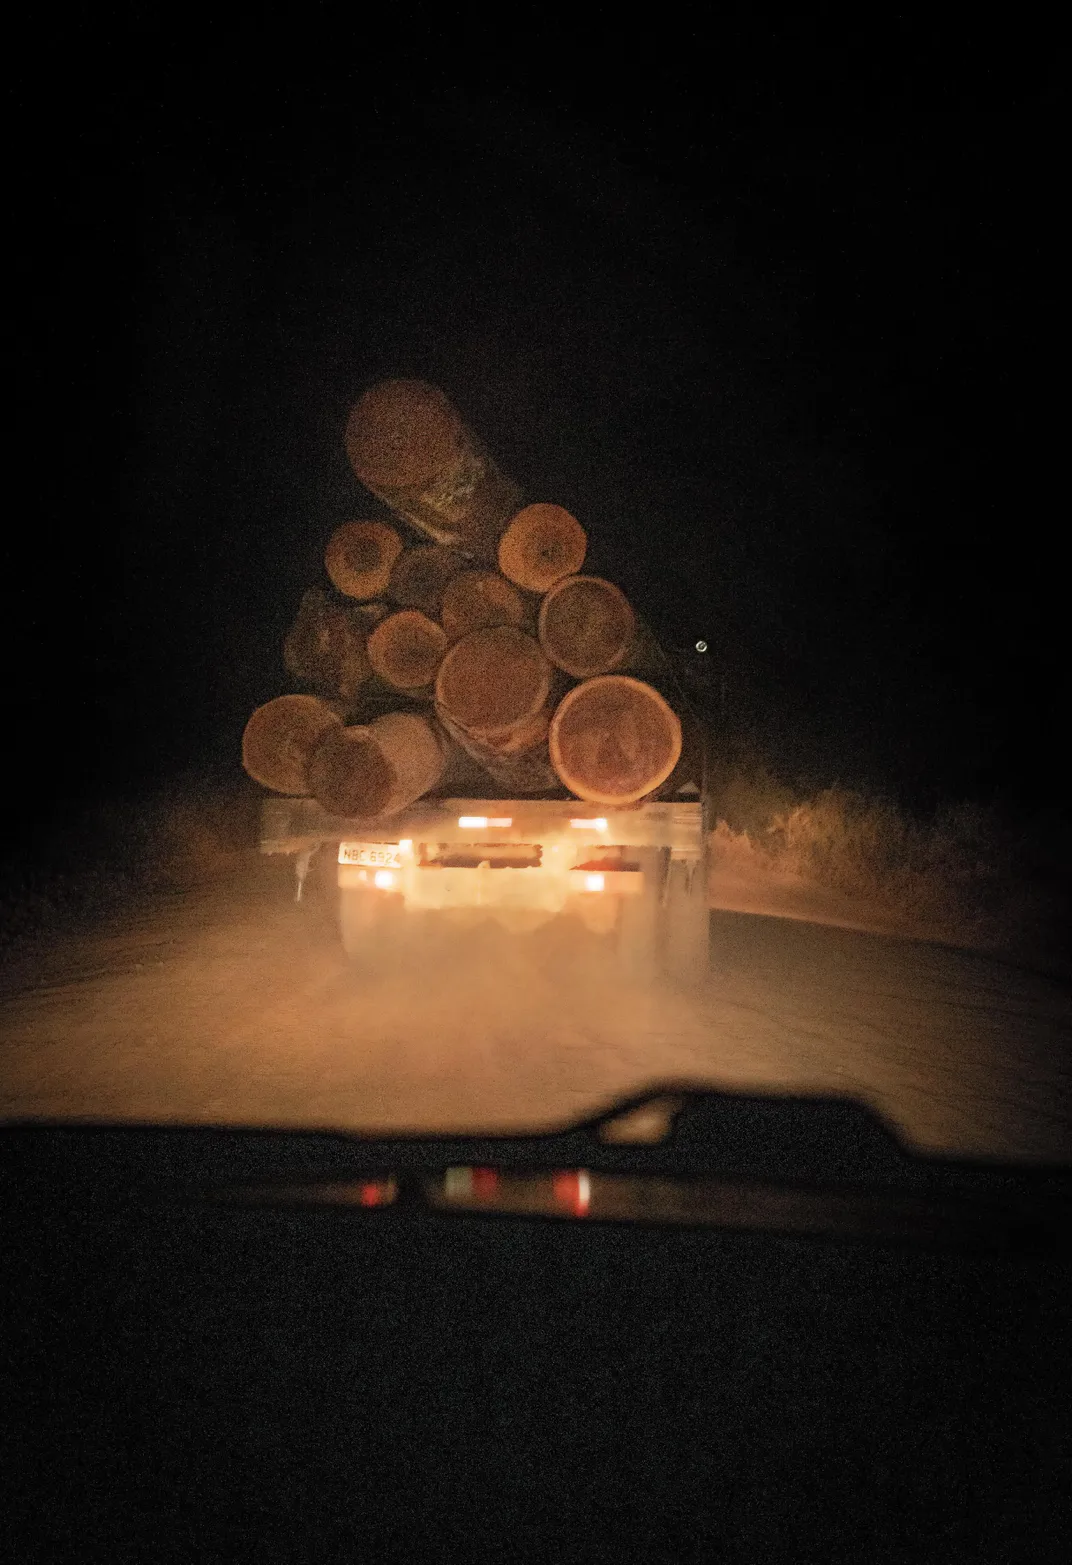 Logs at night